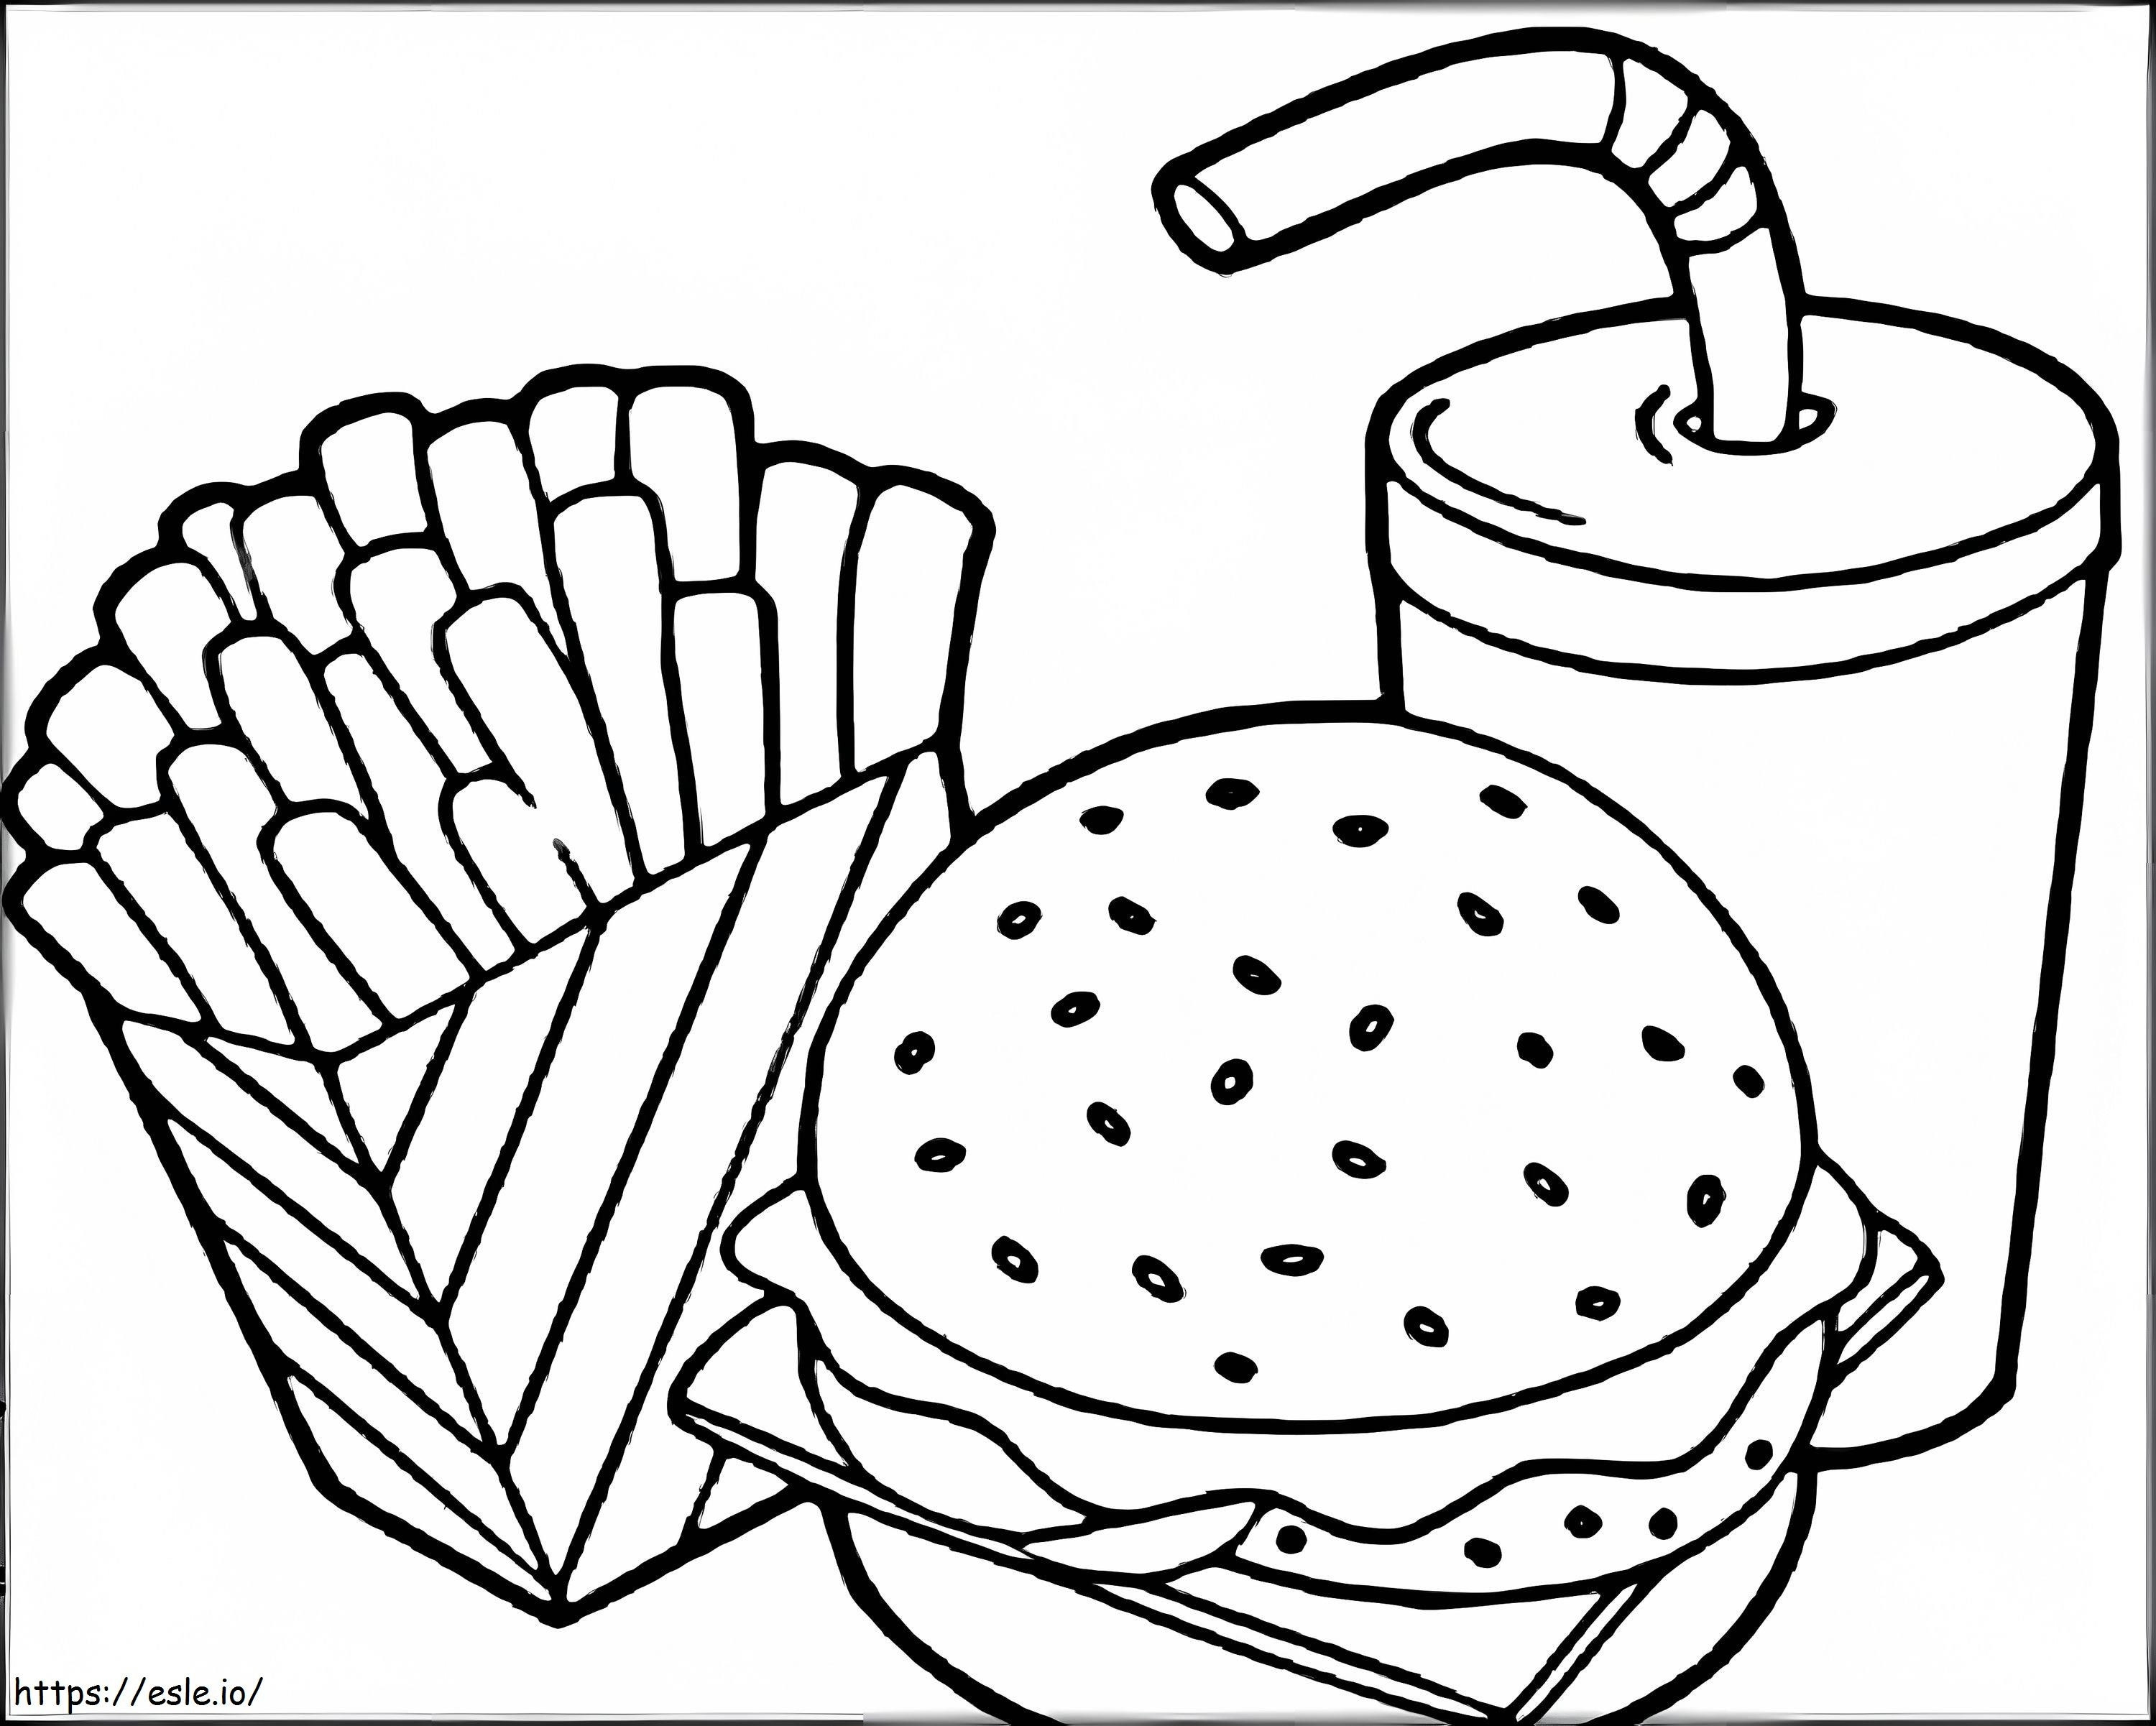 Coloriage Image alimentaire du siège social de McDonald's à imprimer dessin